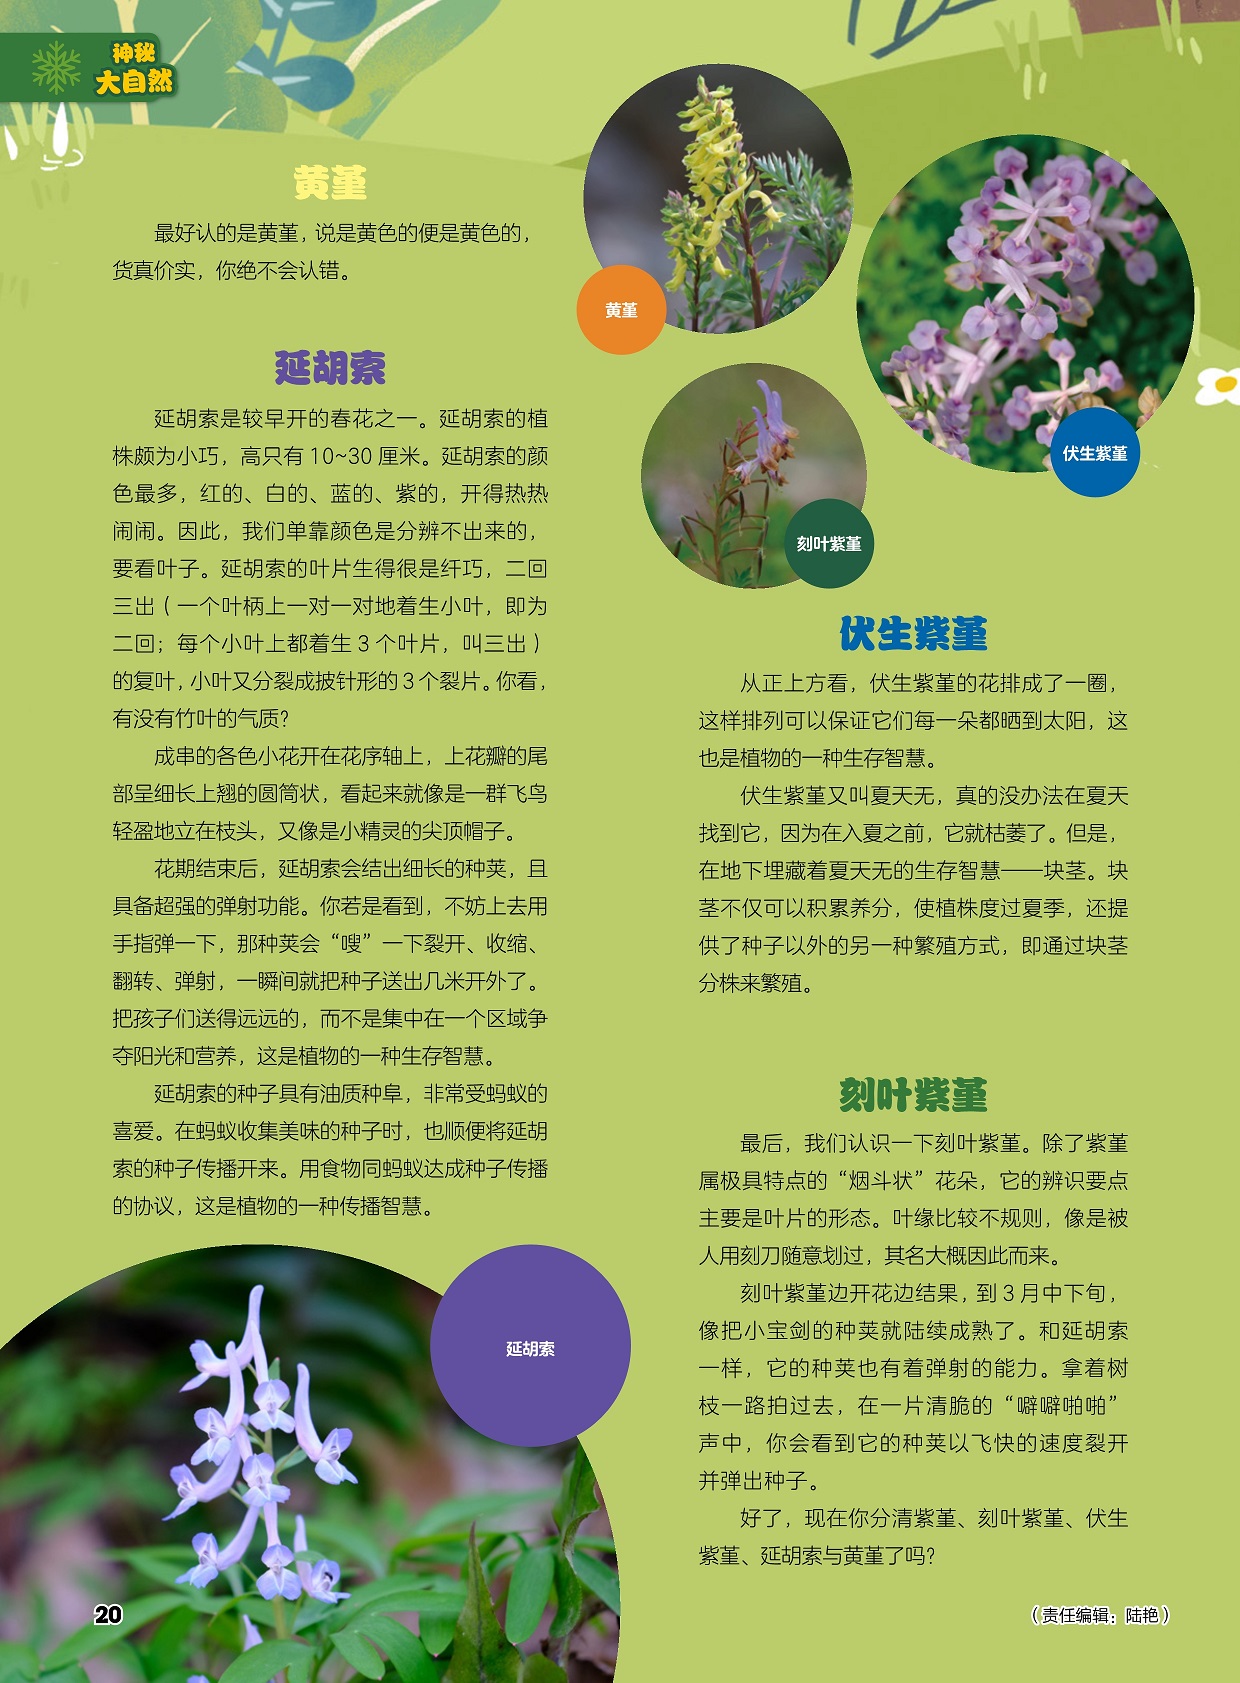 延胡索是较早开的春花之一,伏生紫堇又叫夏天无